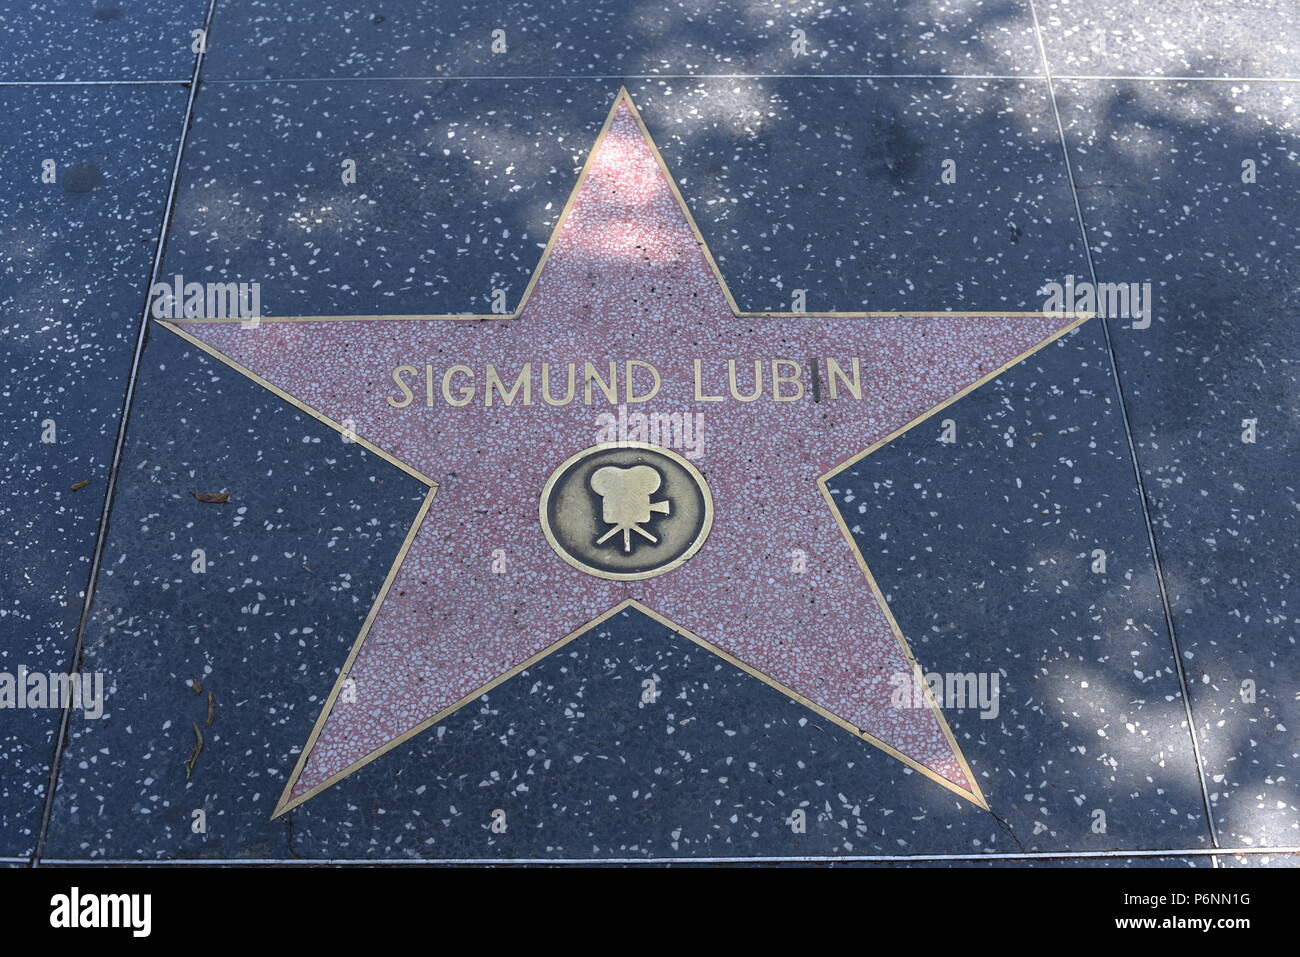 HOLLYWOOD, CA - 29 Giugno: Sigmund Lubin stella sulla Hollywood Walk of Fame in Hollywood, la California il 29 giugno 2018. Foto Stock